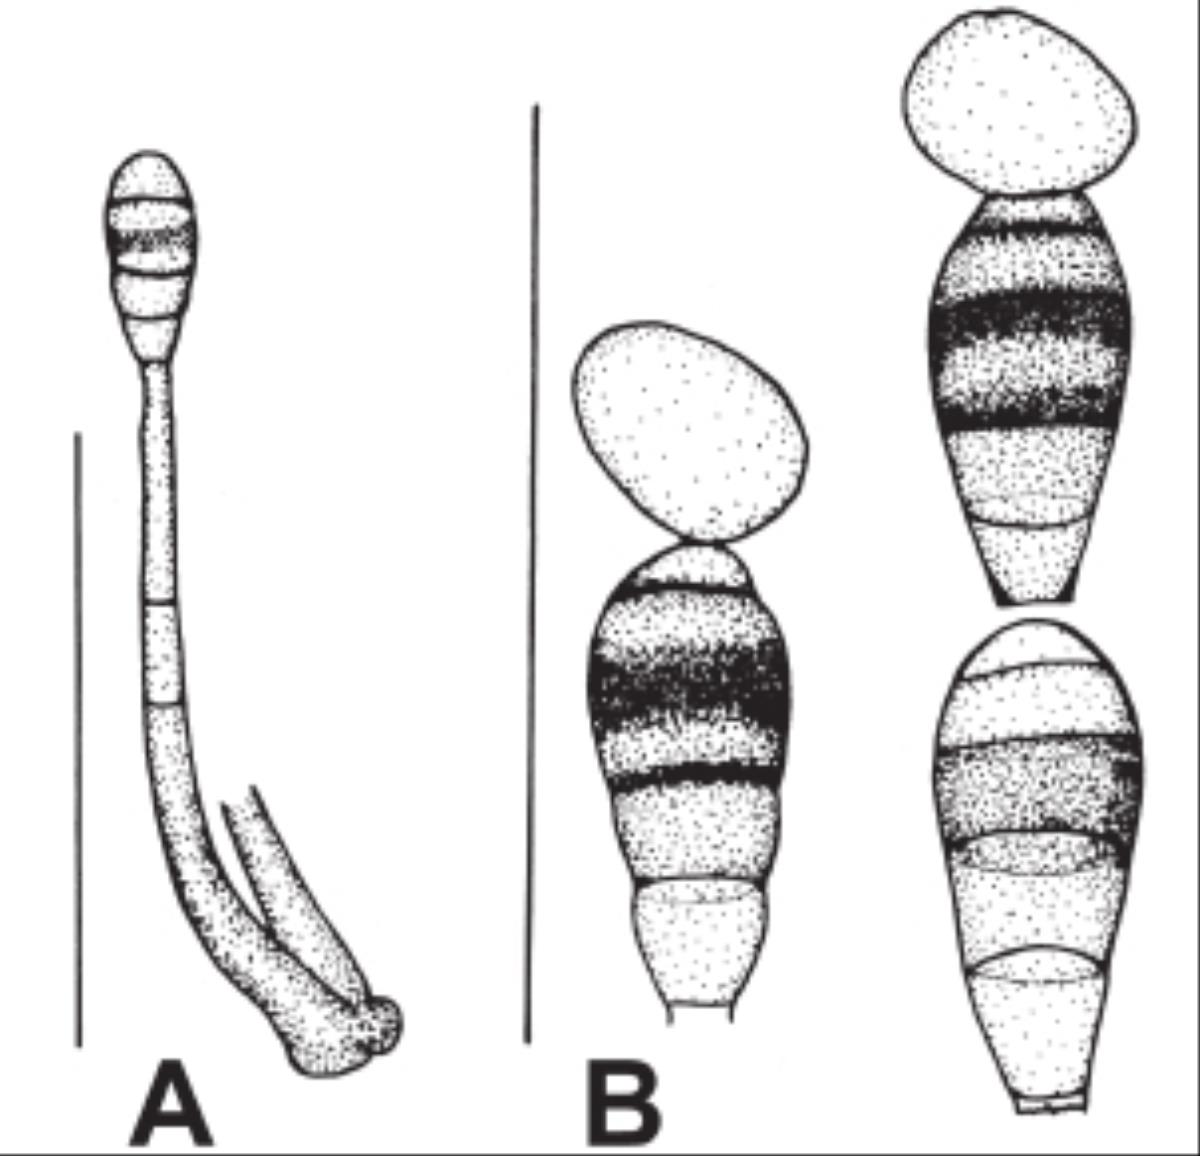 Phragmocephala image